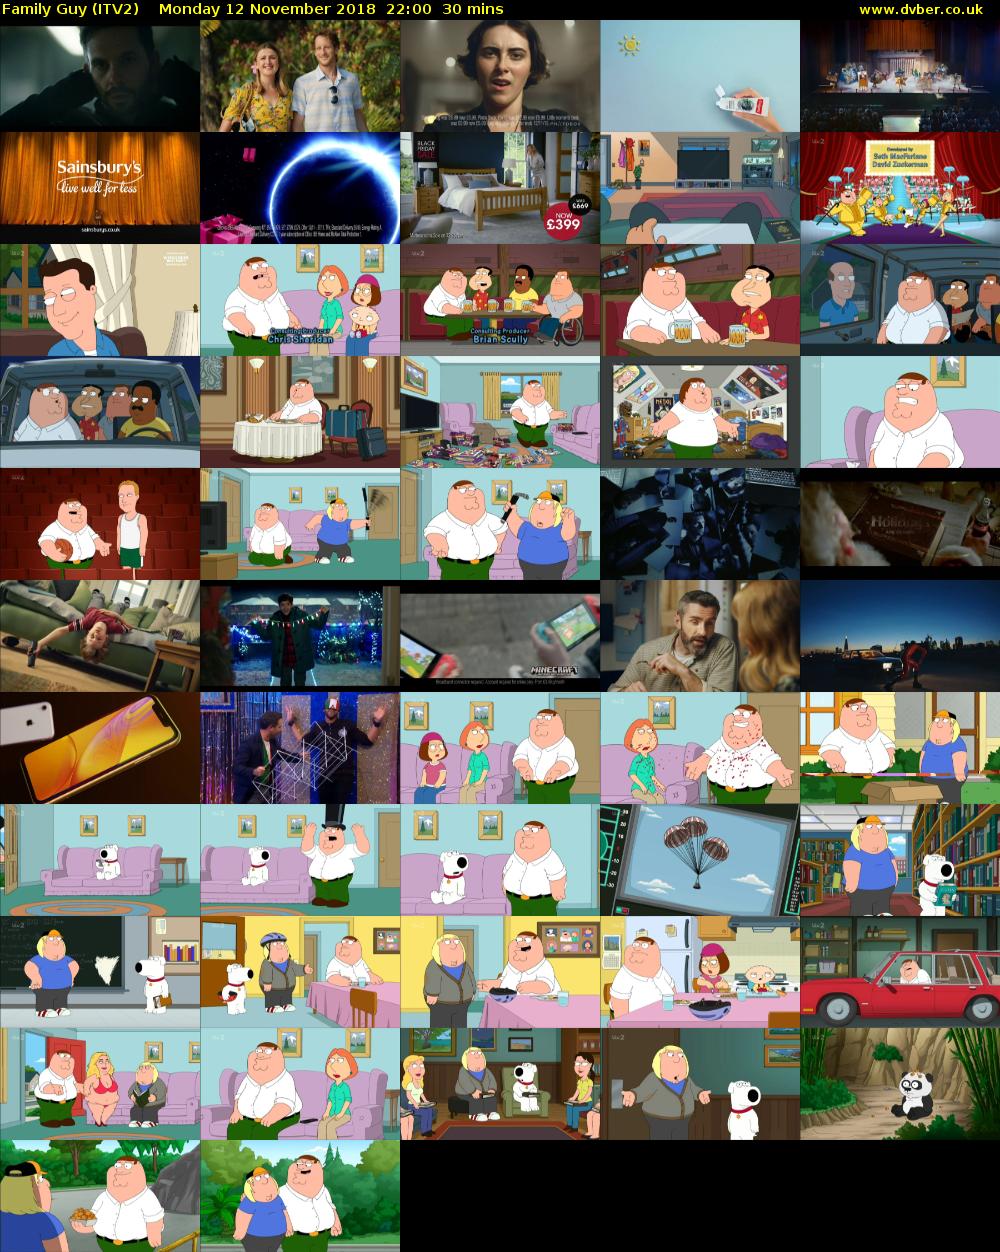 Family Guy (ITV2) Monday 12 November 2018 22:00 - 22:30